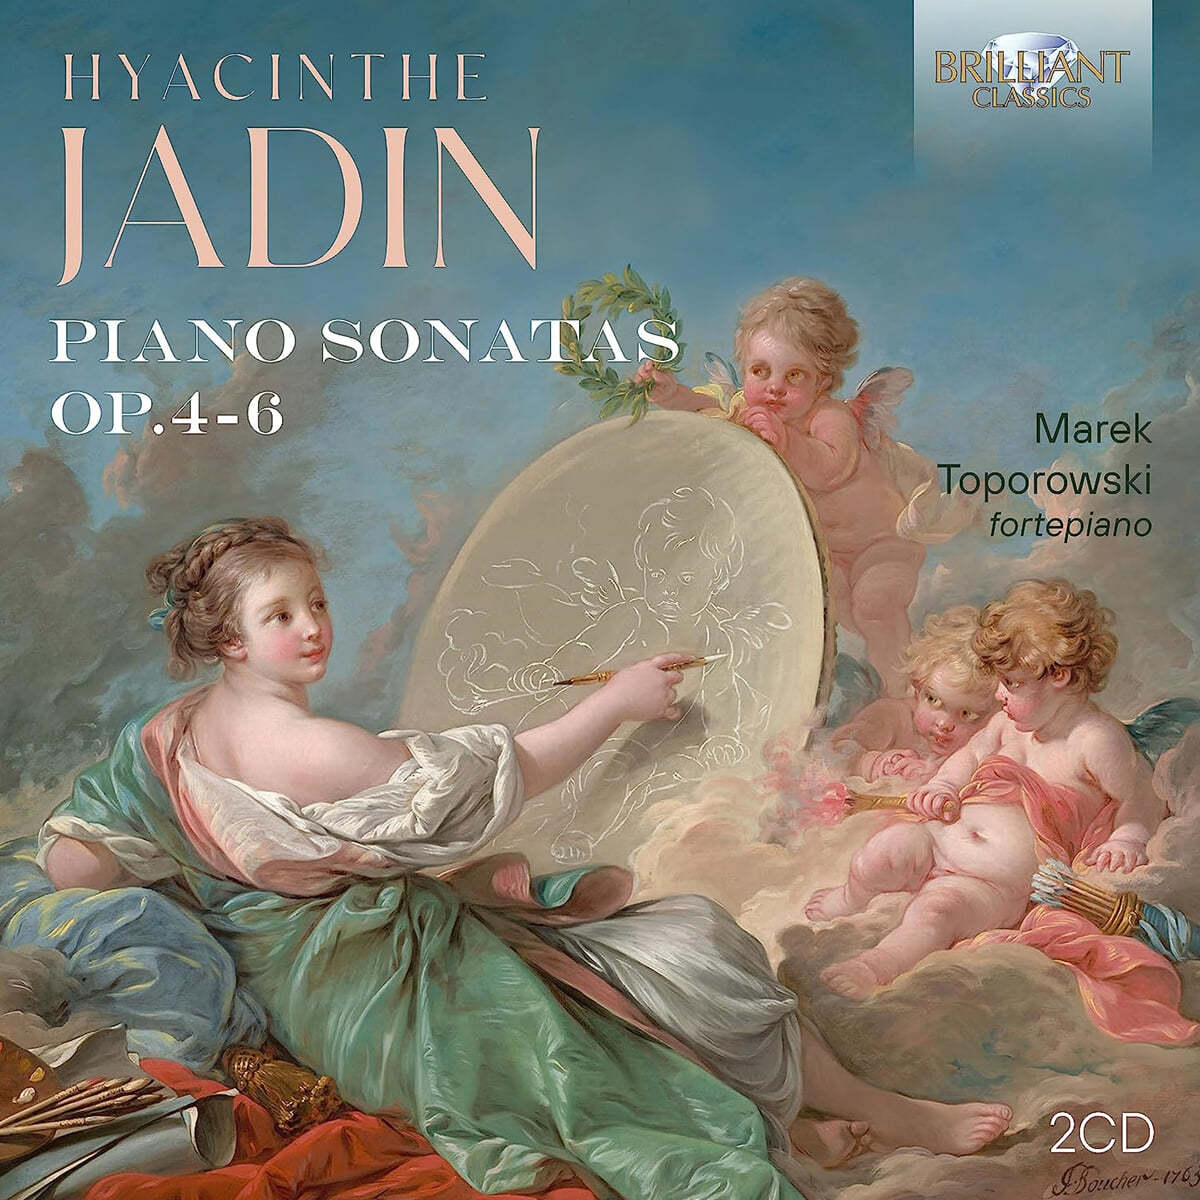 이아생트 자댕: 피아노 소나타 Hyacinthe Jadin: Piano Sonatas Op.4-6)